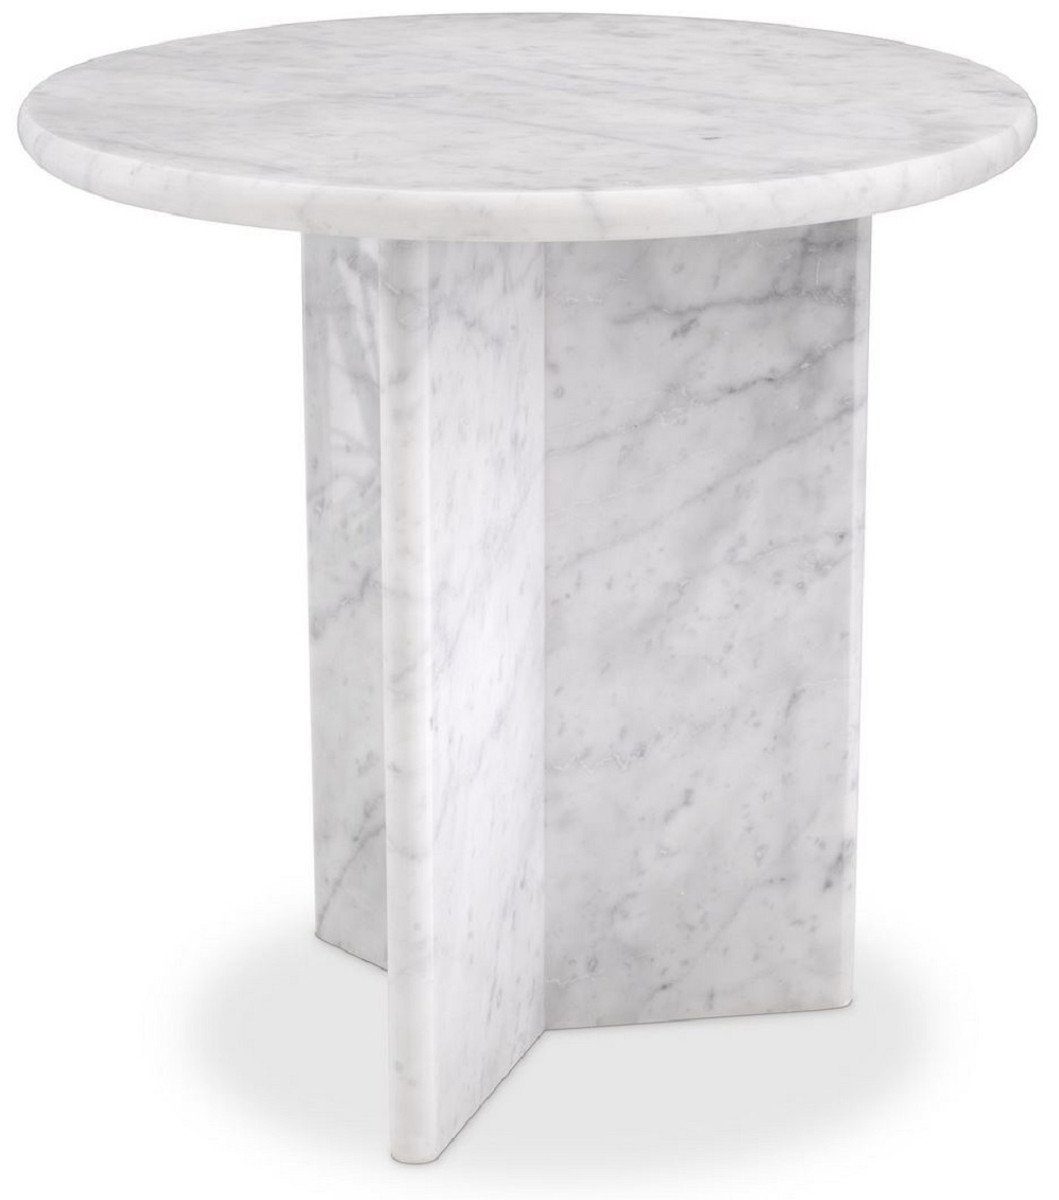 Casa Padrino Beistelltisch Luxus Beistelltisch Weiß Ø 45 x H. 45 cm - Runder Beistelltisch aus hochwertigem Carrara Marmor - Luxus Marmor Möbel